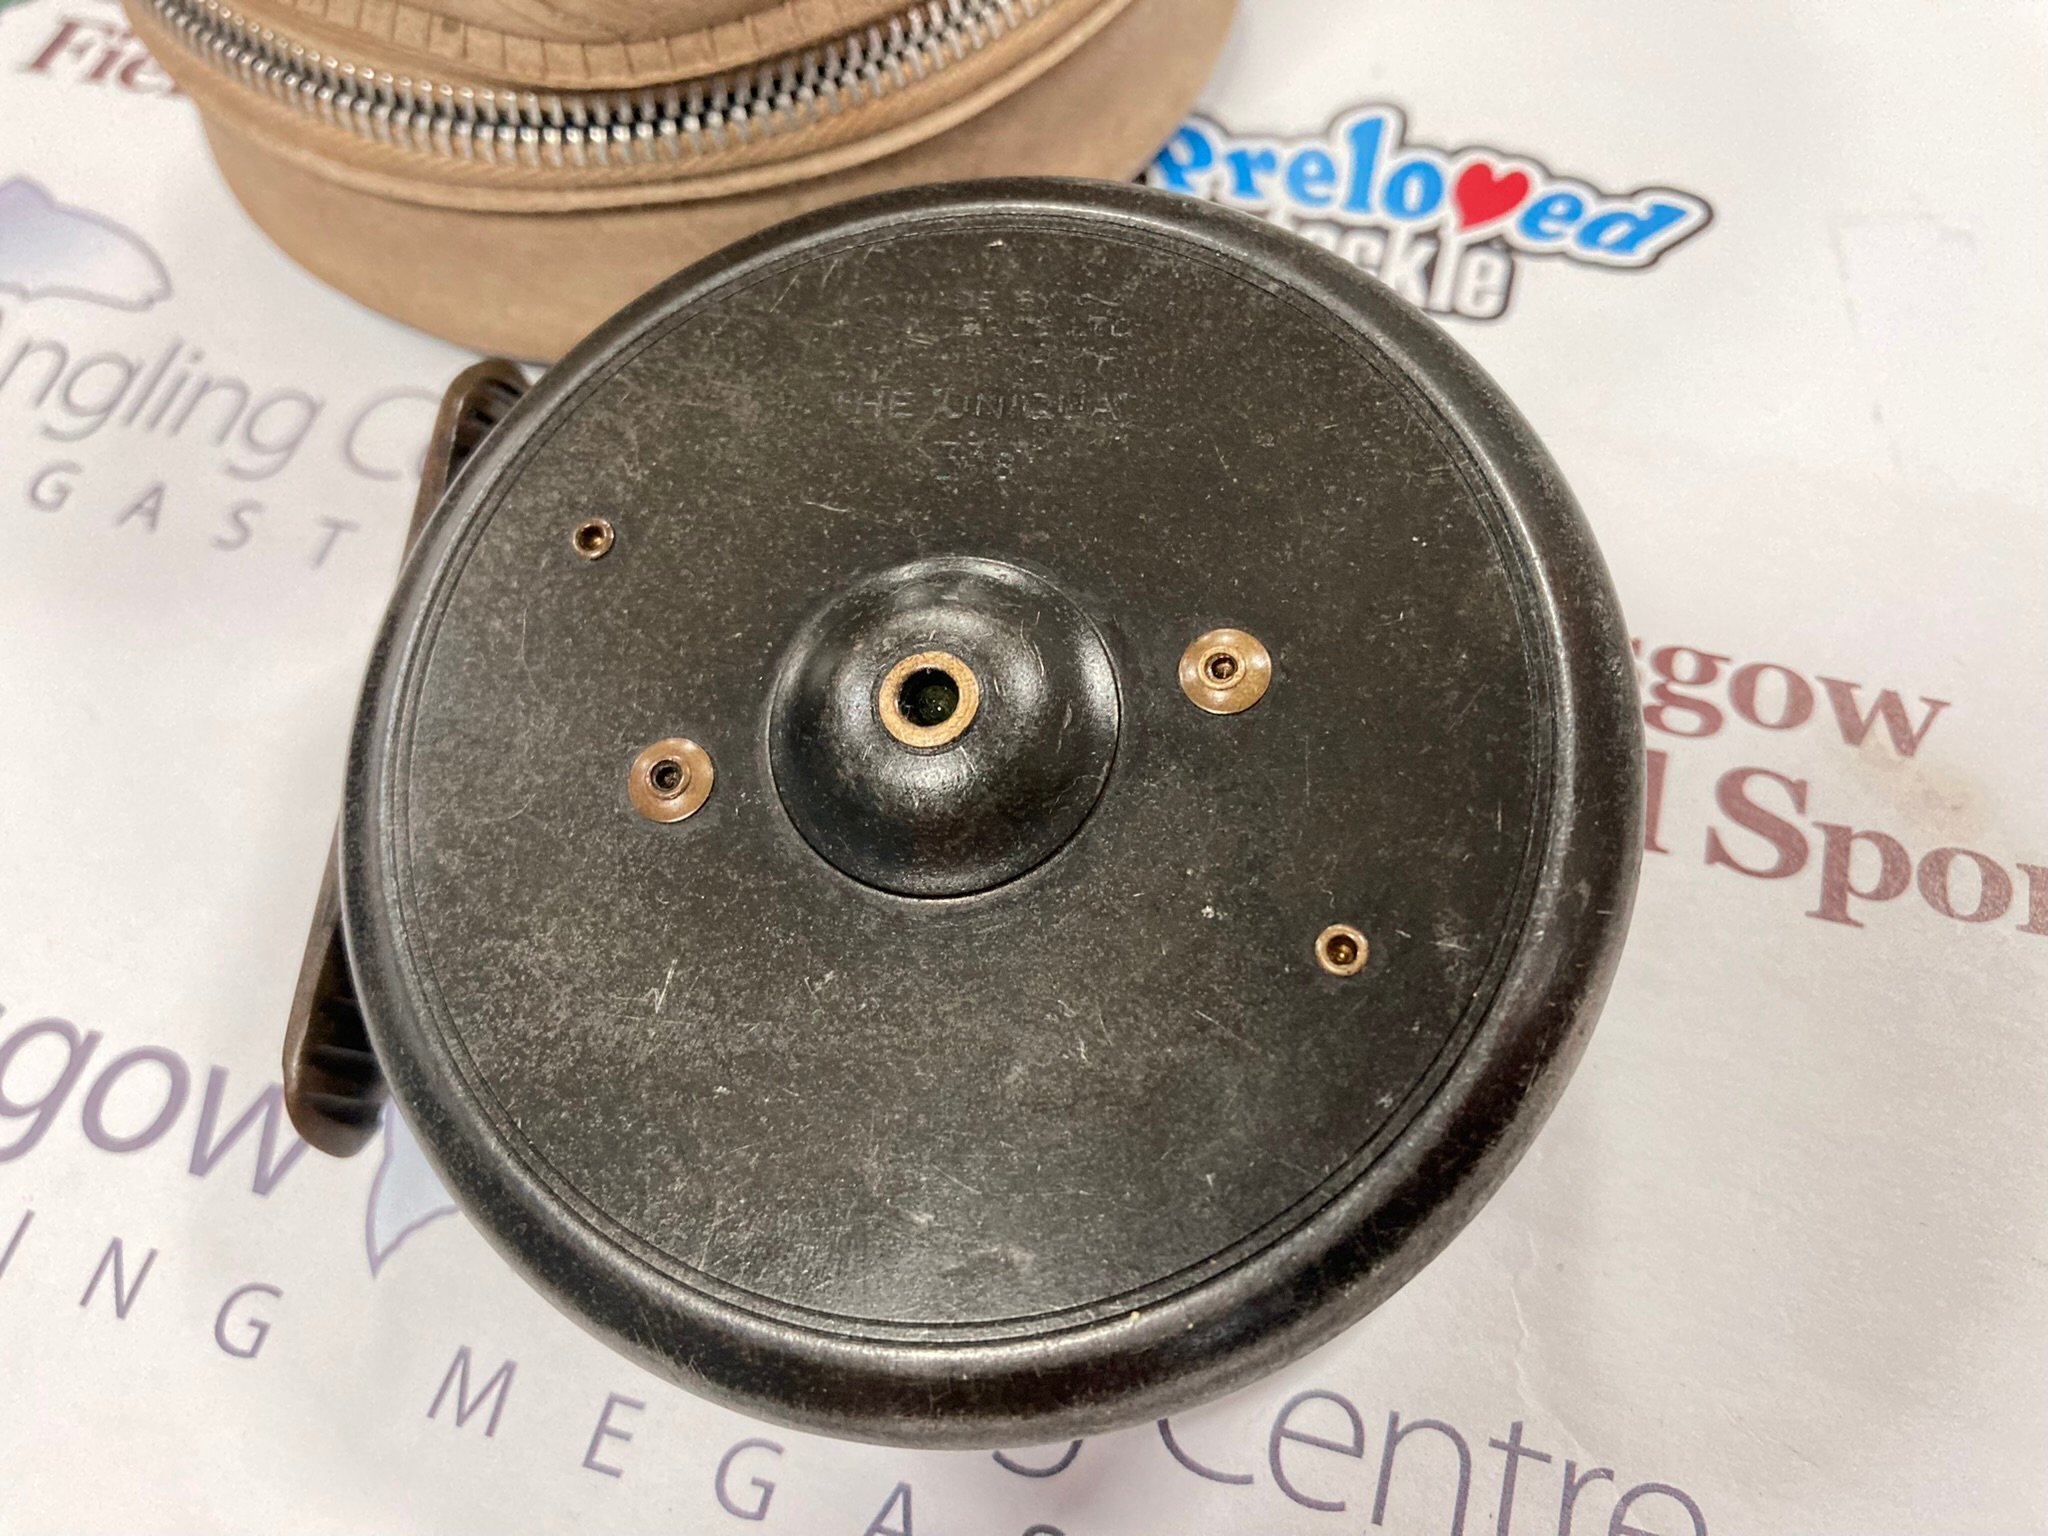 Rimfly KS 3.5 7/8 Fly reel and spare spool (no box) - Used